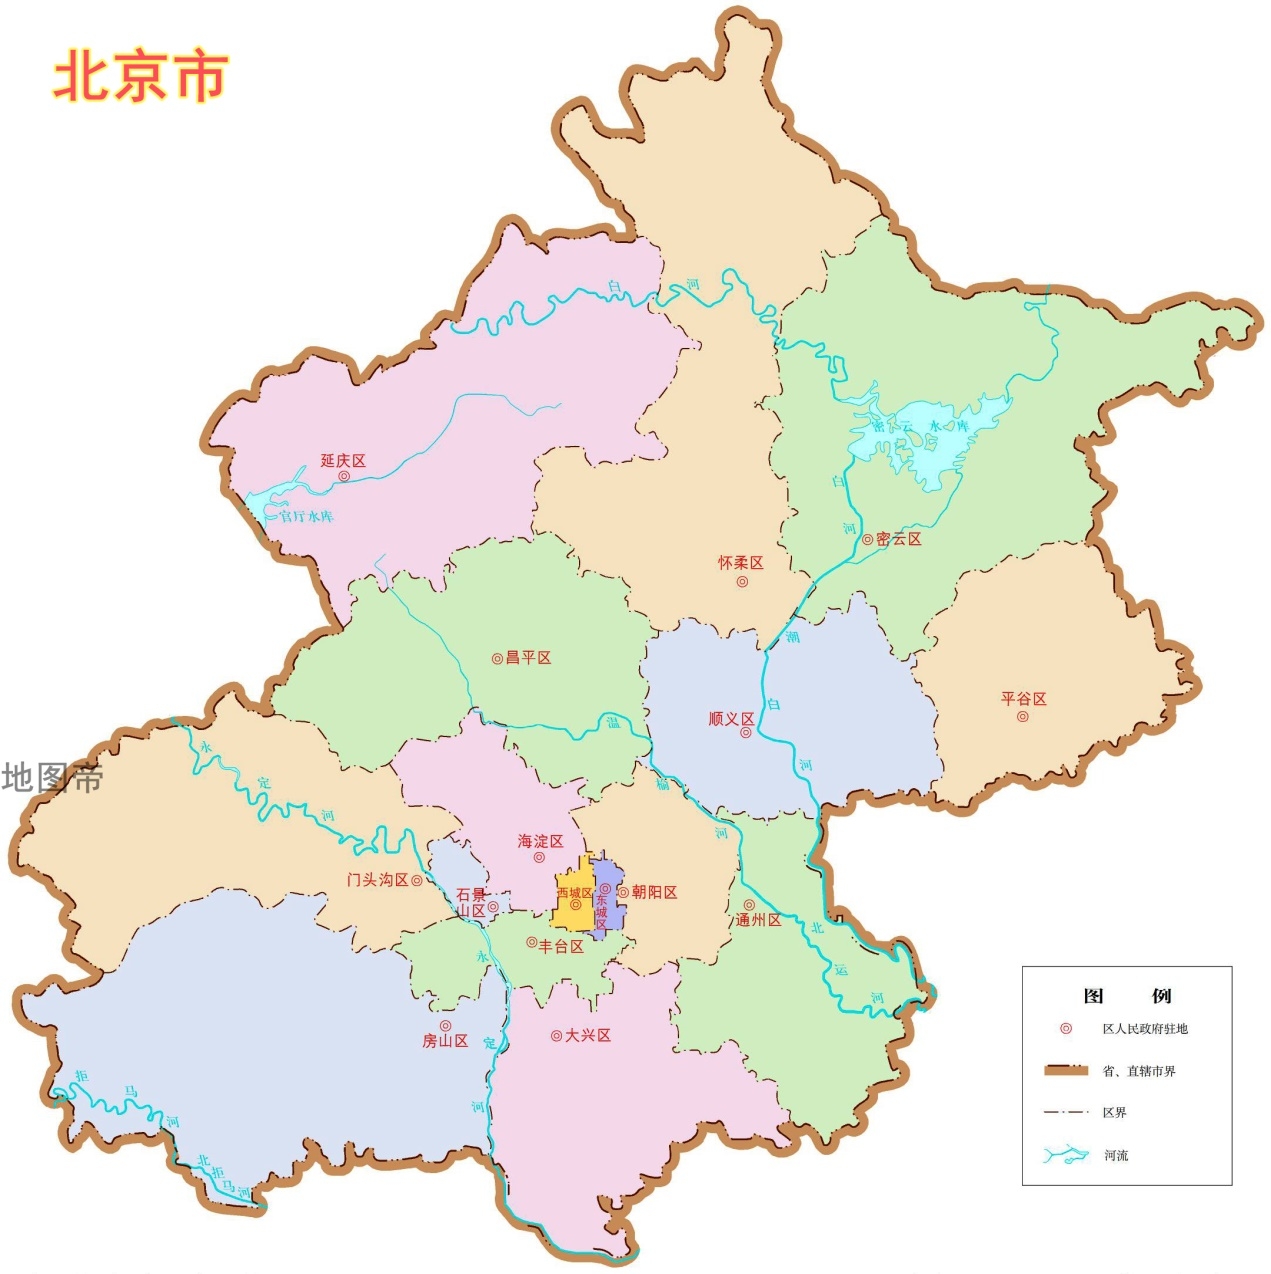 北京天津之间的河北飞地如何形成的,会被划入北京吗?